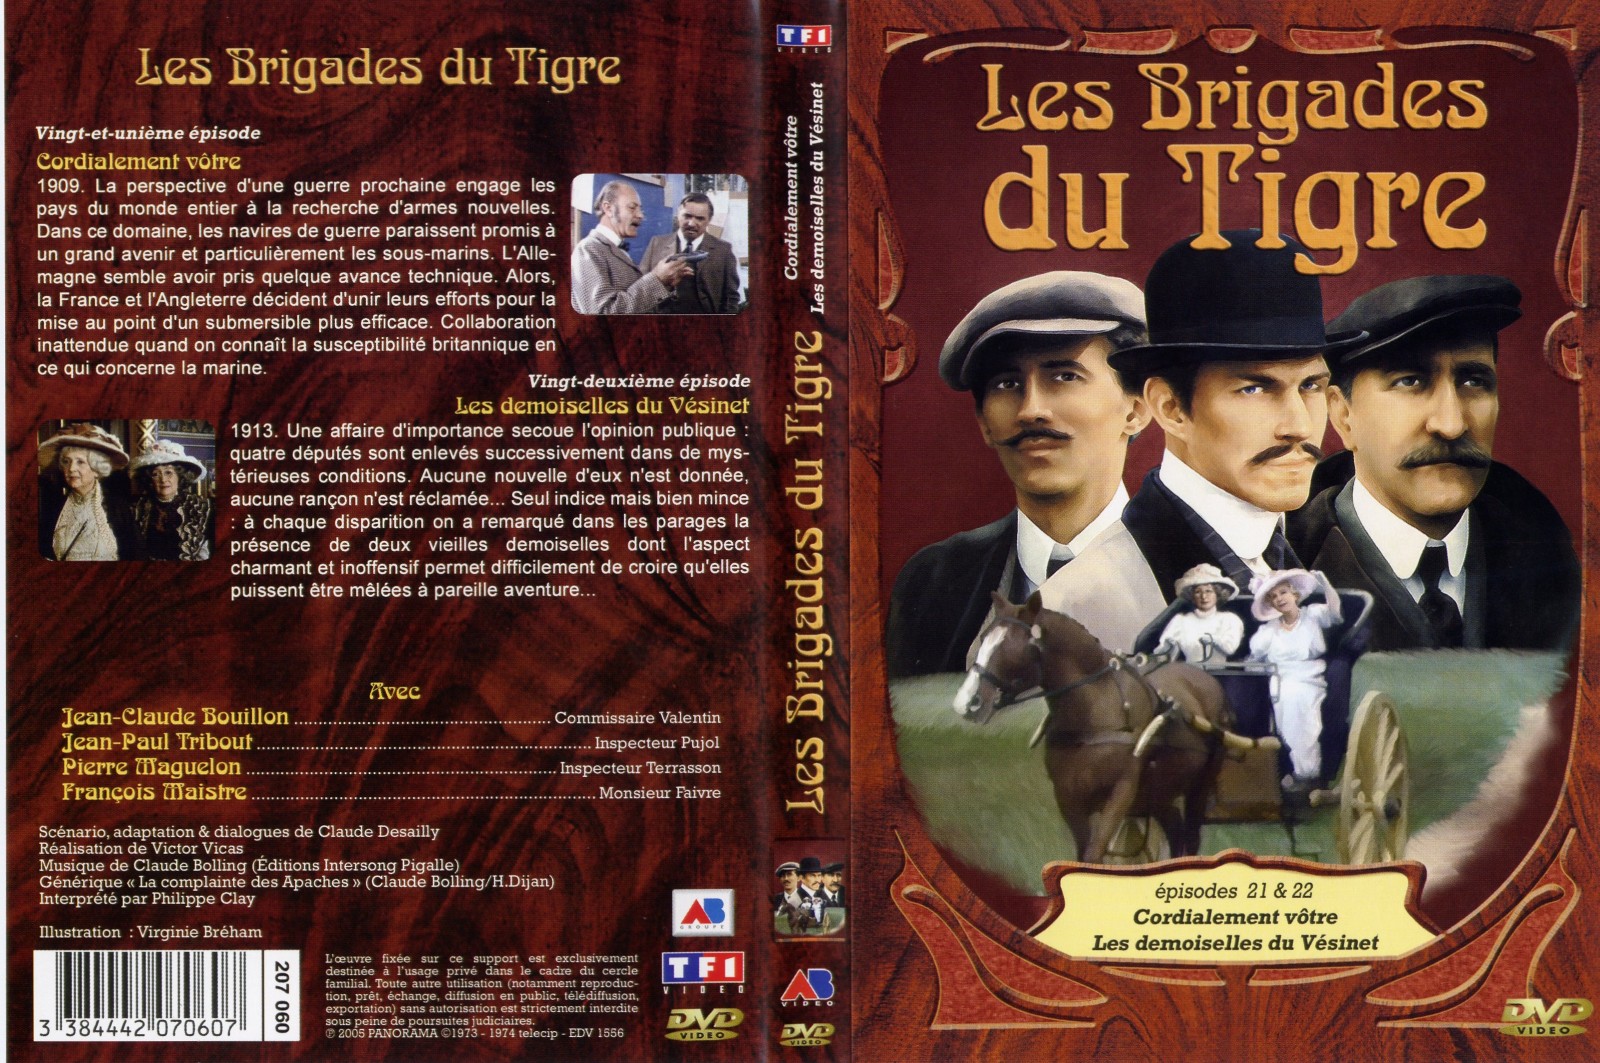 Jaquette DVD Les brigades du tigre vol 11